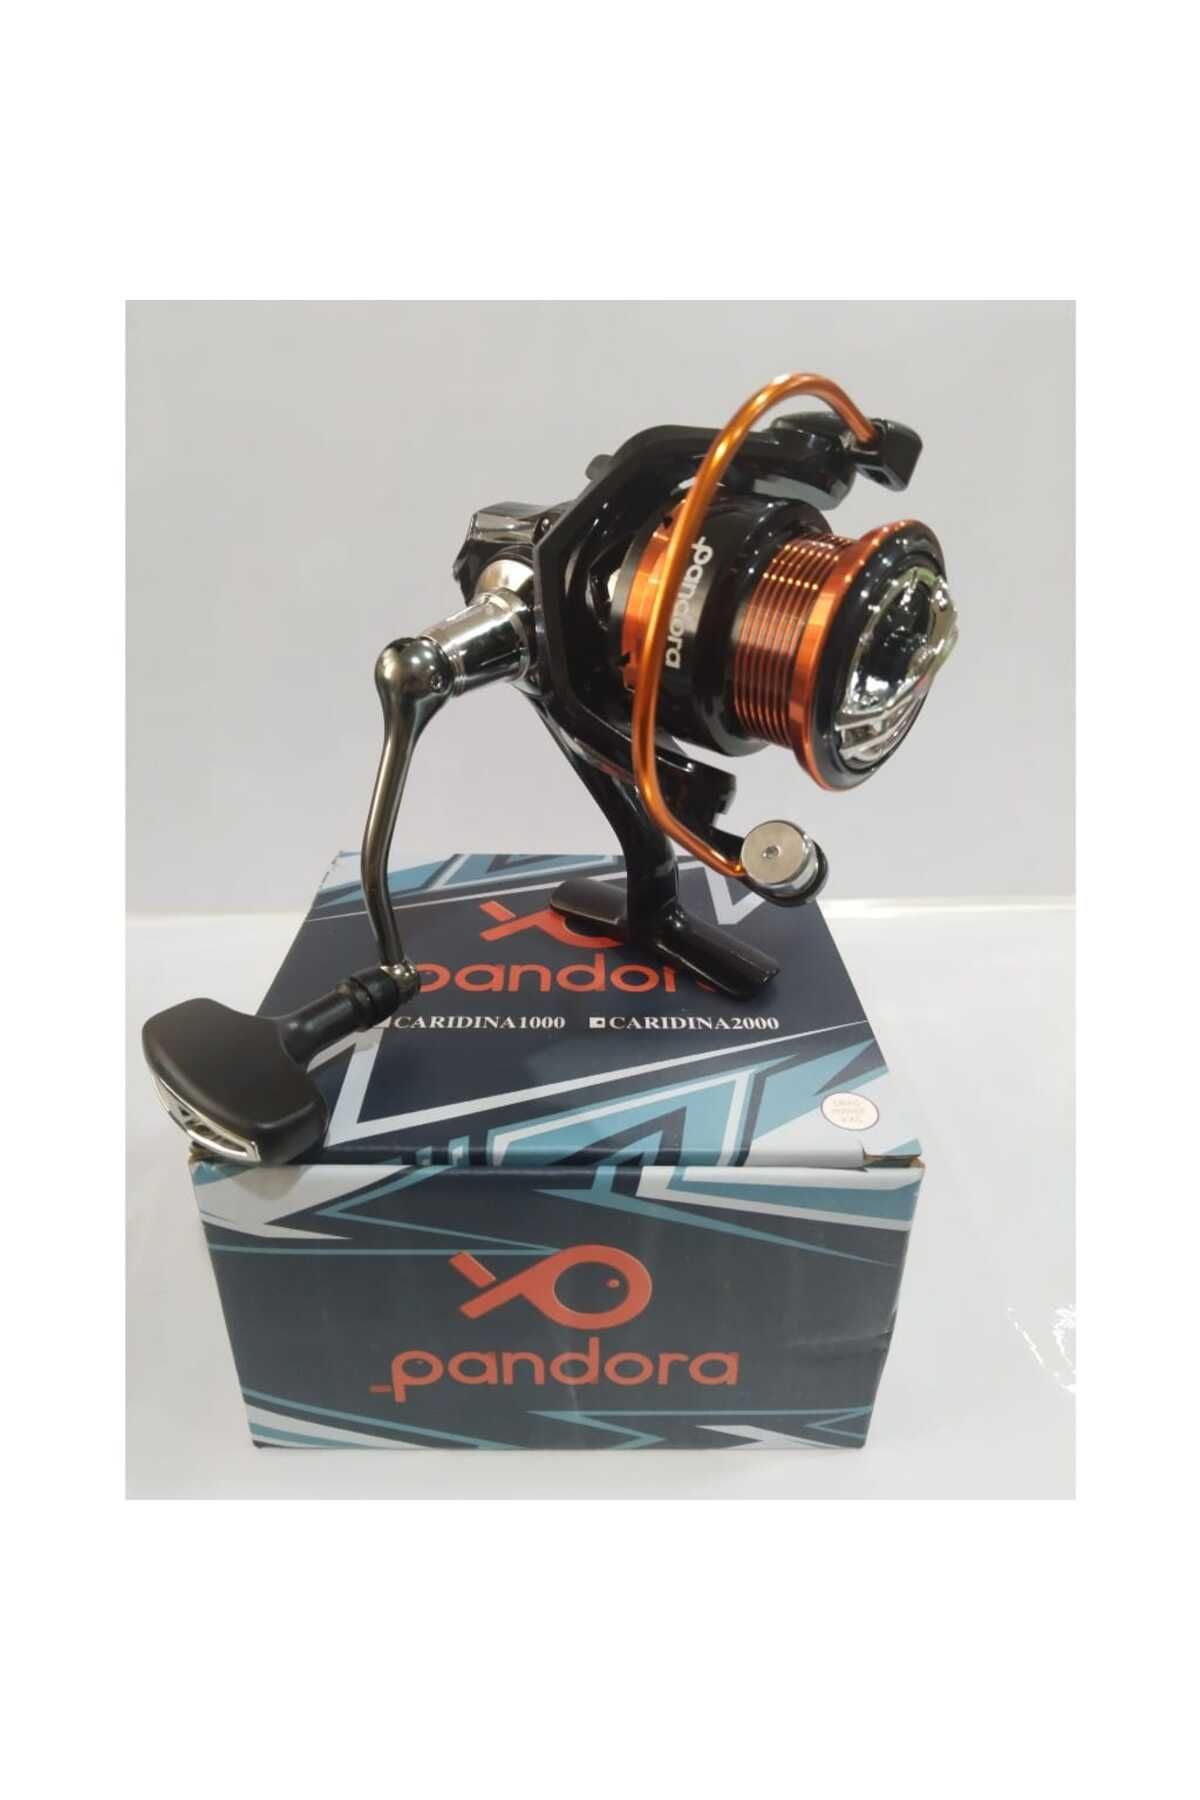 Pandora Caridina 2000 Olta Makinası 5+1 Bilyalı